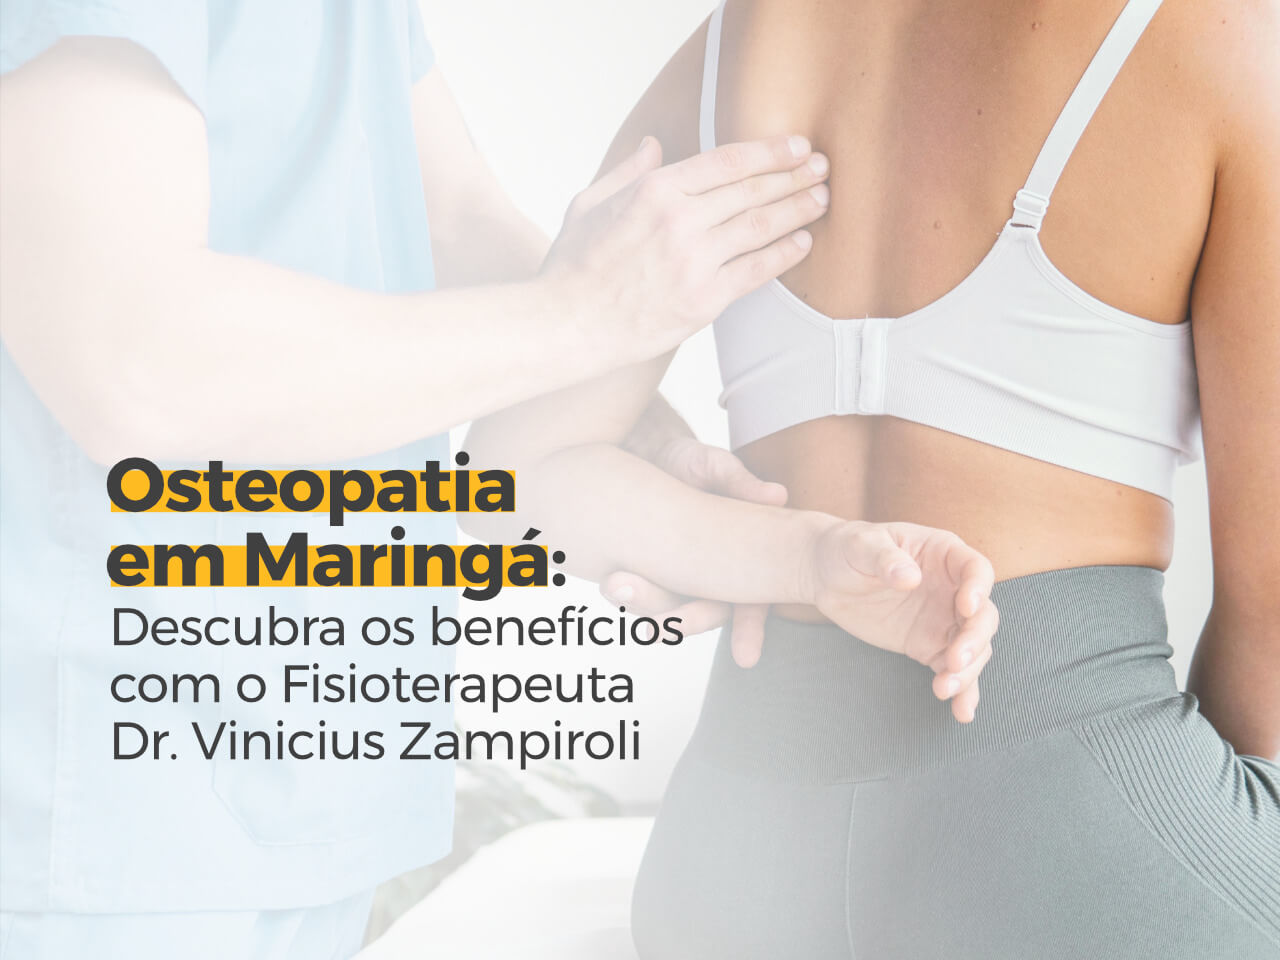 Osteopatia em Maringá: Descubra os Benefícios com o Fisioterapeuta Osteopata Dr. Vinicius Zampiroli